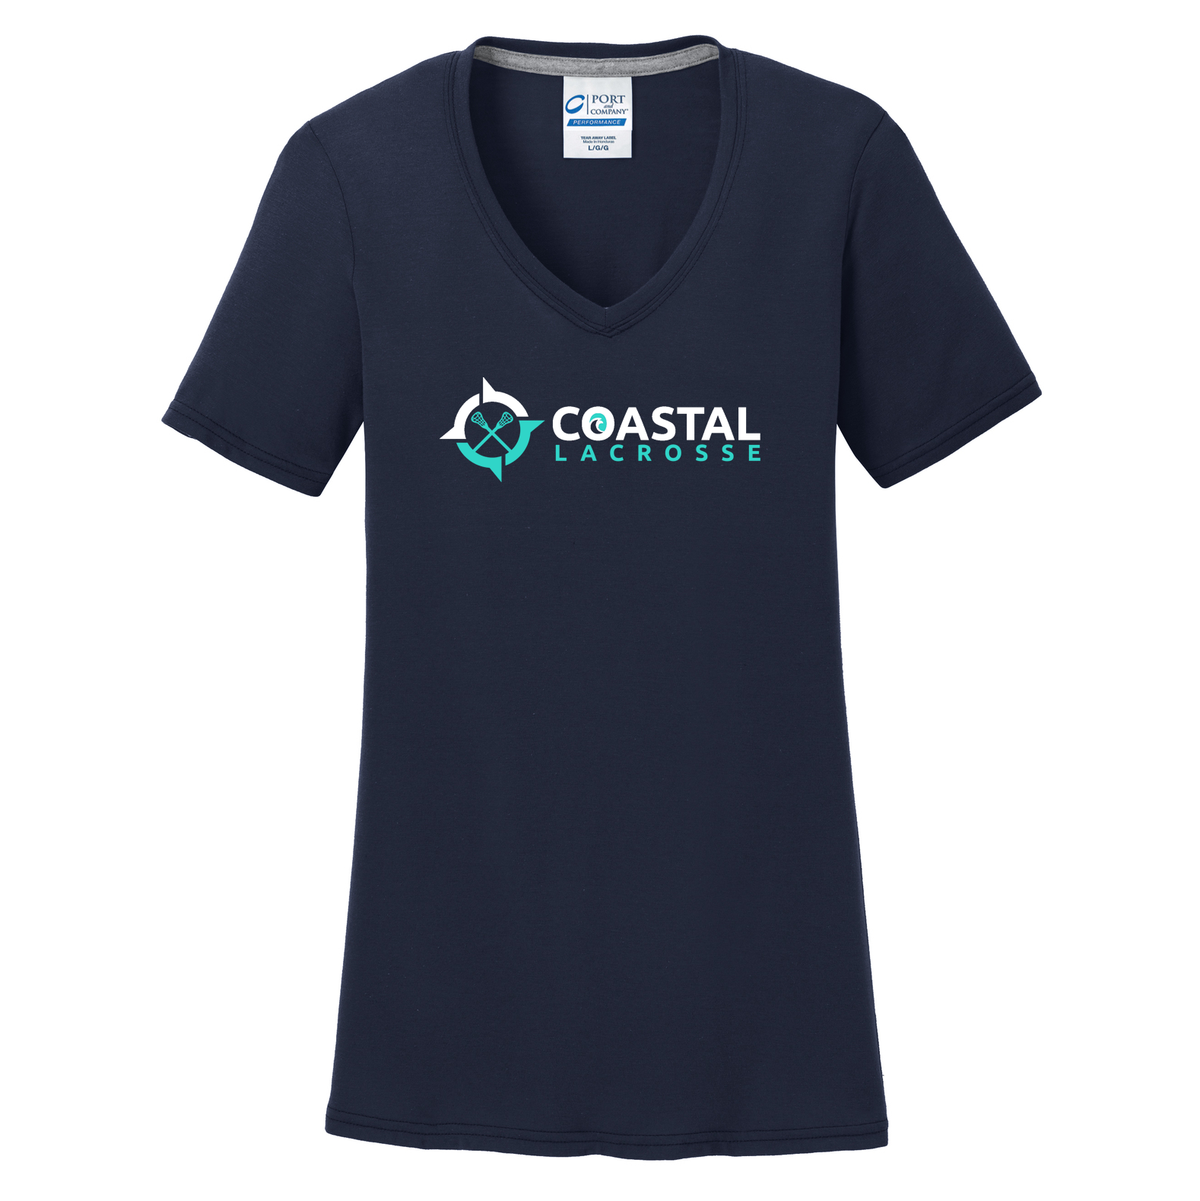 Coastal Lacrosse Women's Navy T-Shirt